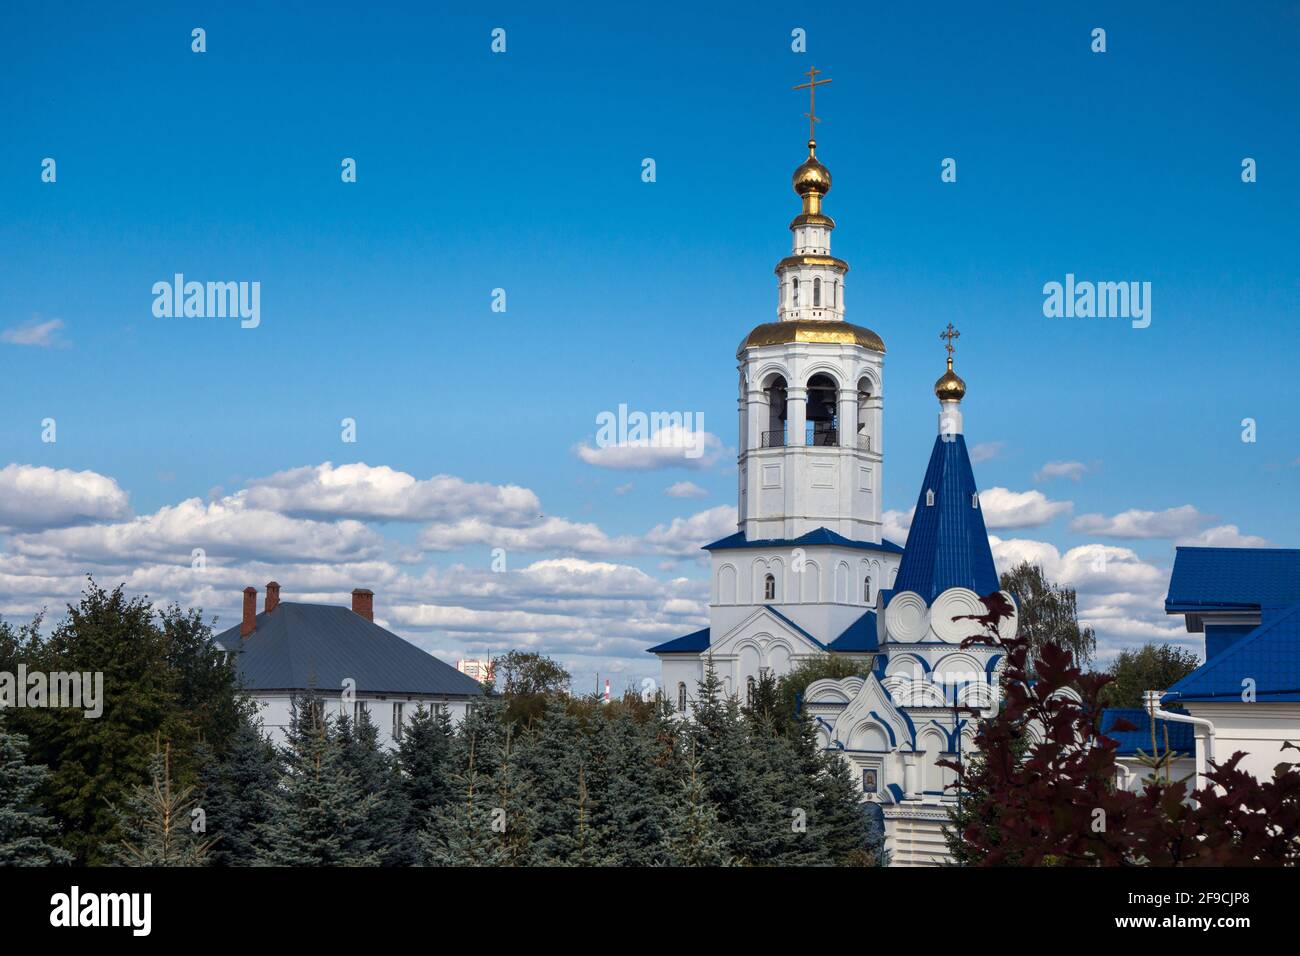 Blick vom Dach auf die St. Vladimir Kirche und den Glockenturm des Zilantov Klosters, Kasan, Russland. Kloster im Jahr 1552 gefunden Stockfoto